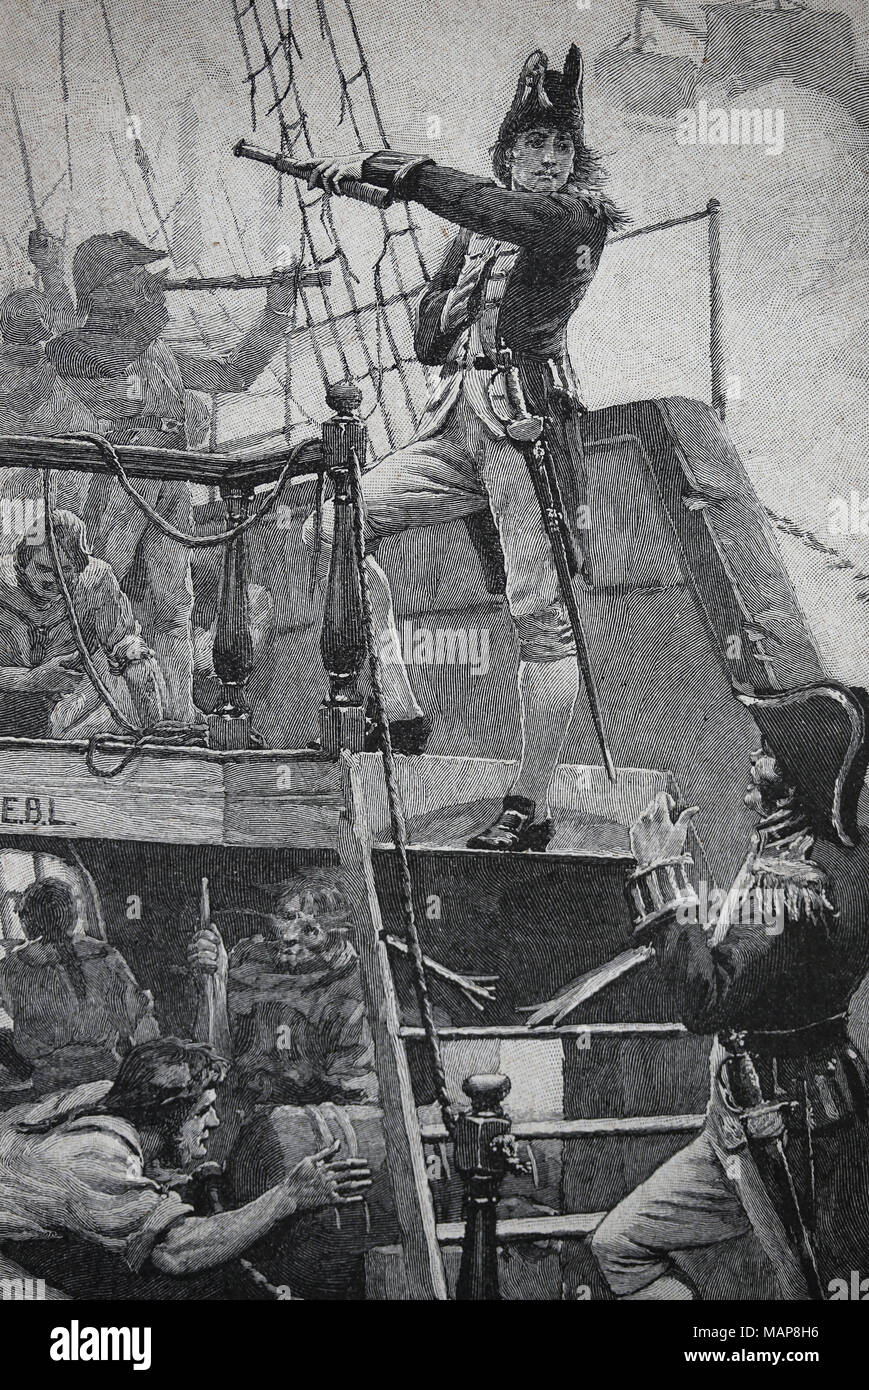 Schlacht von Kopenhagen (1801). Teil der Krieg der Zweiten Koalition. Admiral Nelson während der Naval batlle. Gravur, 19 Cent. Stockfoto